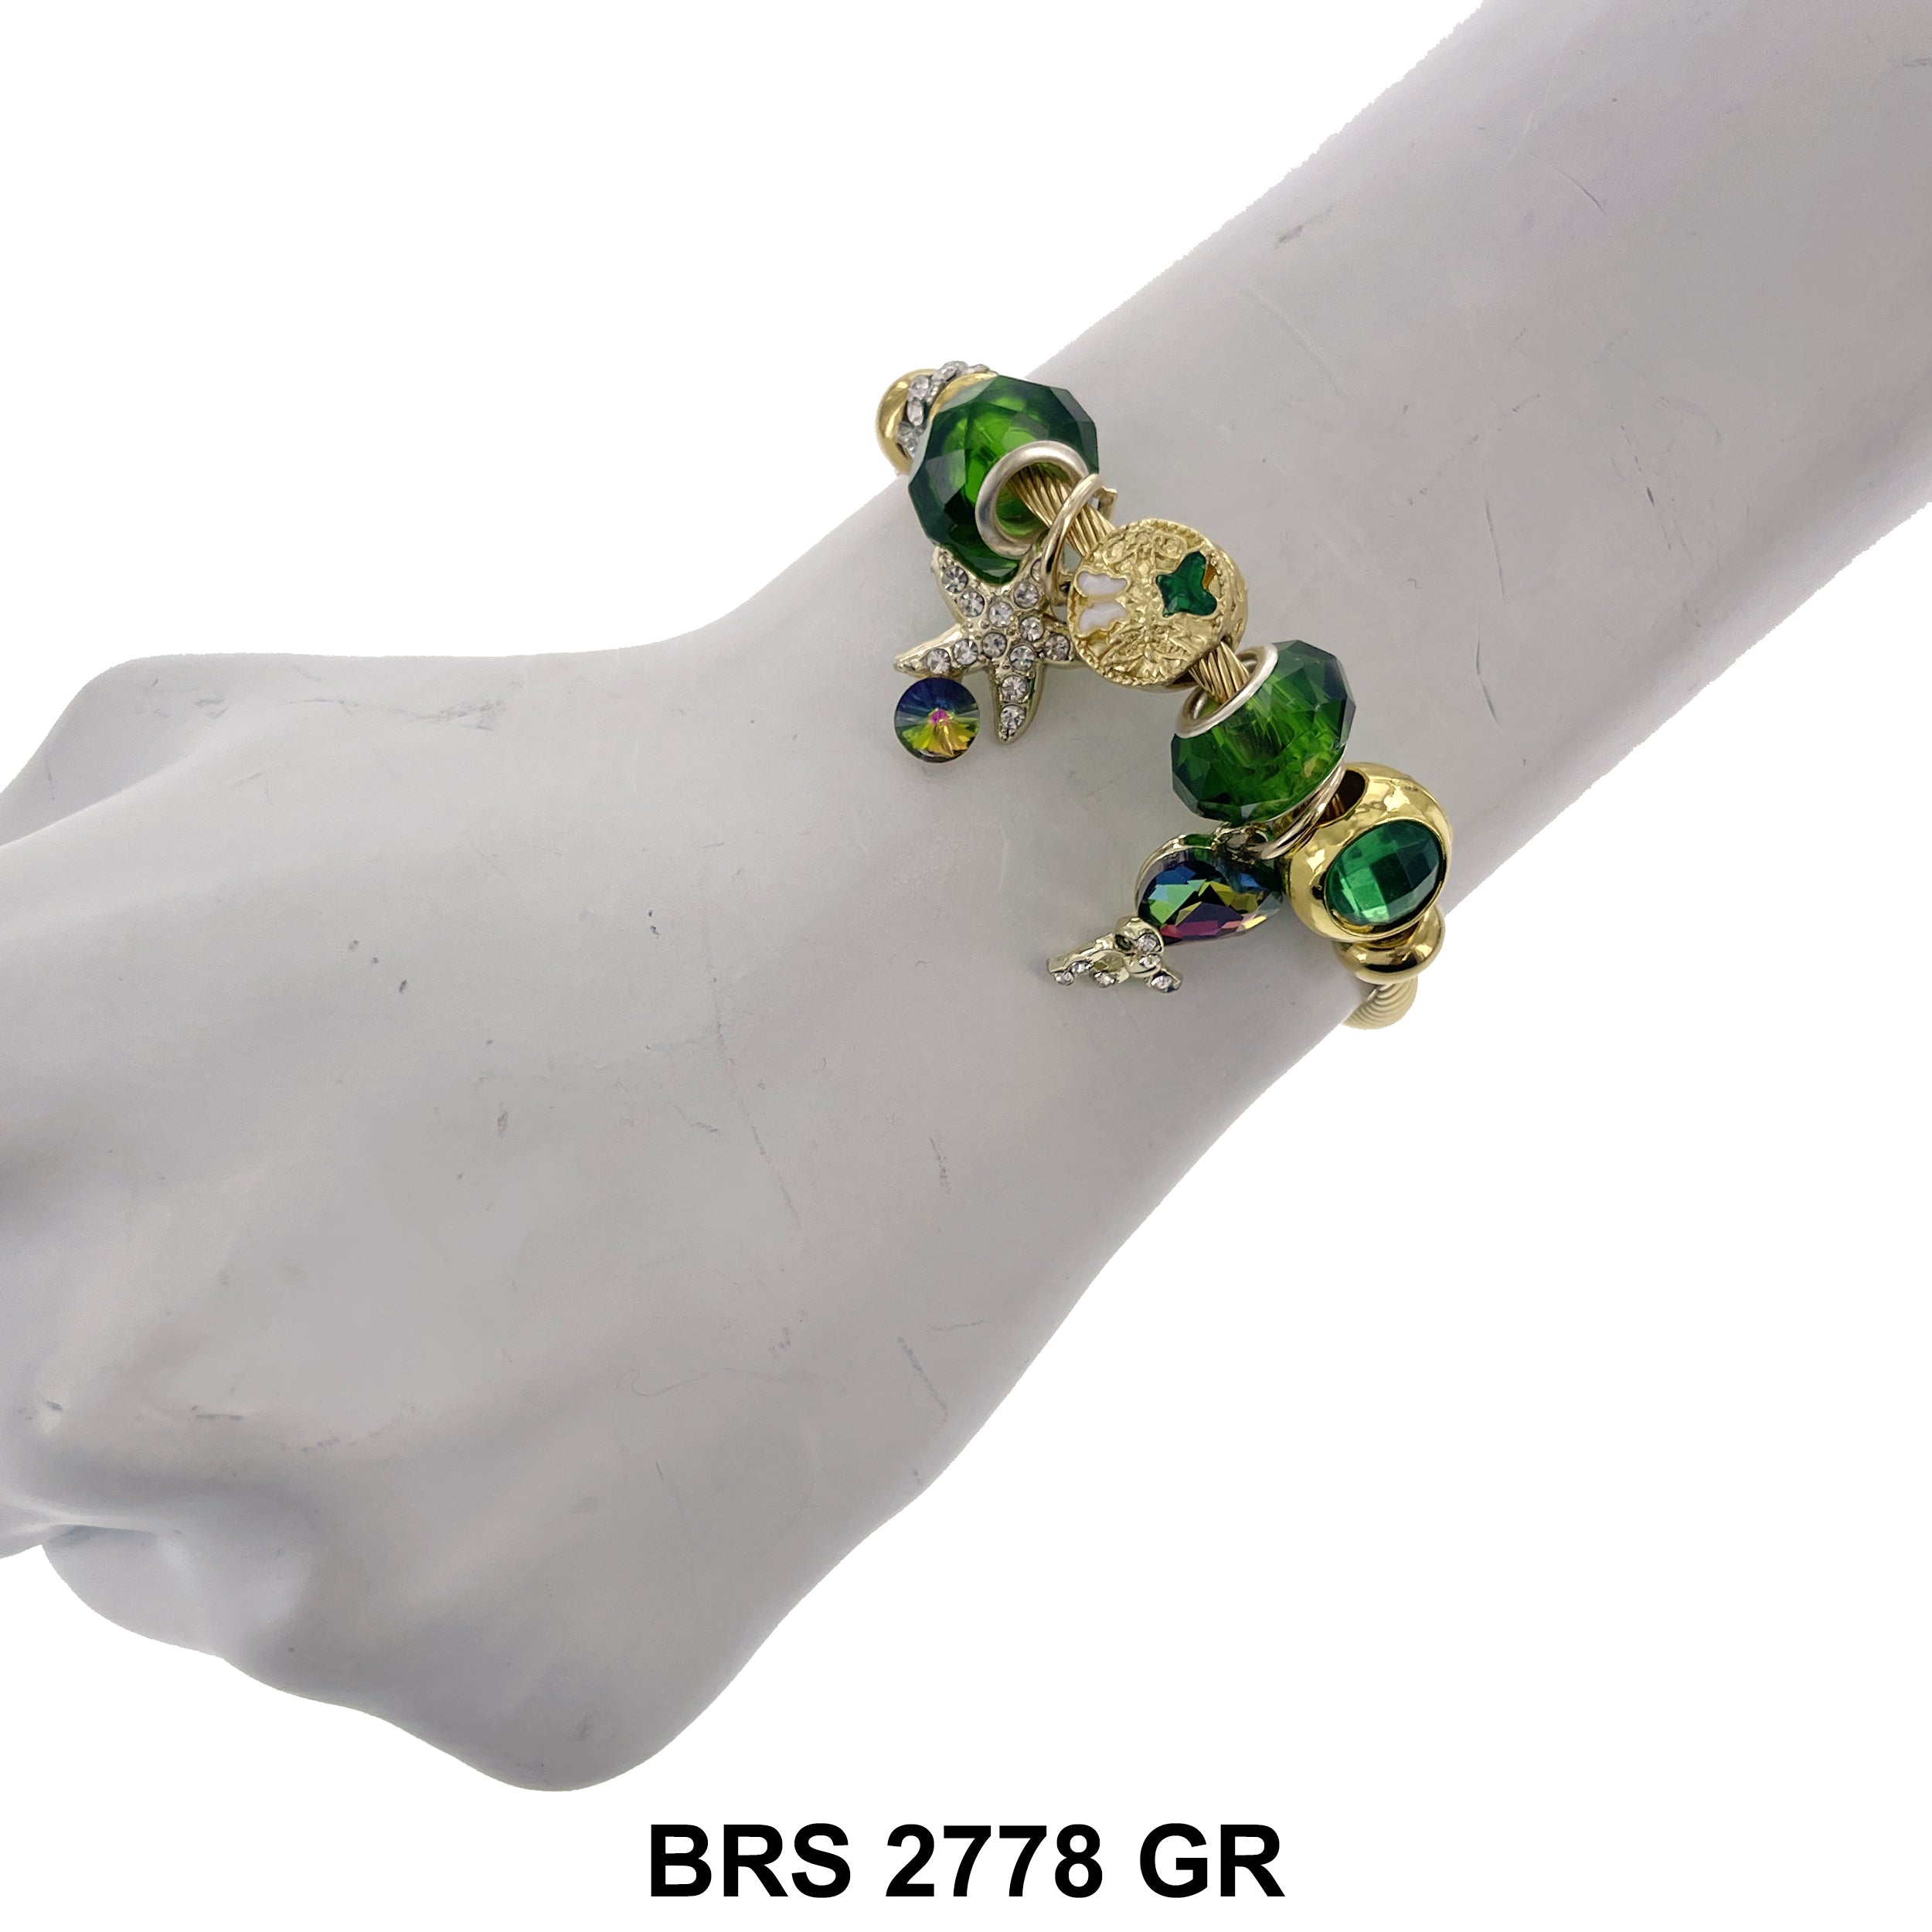 Hanging Charm Bracelet BRS 2778 GR